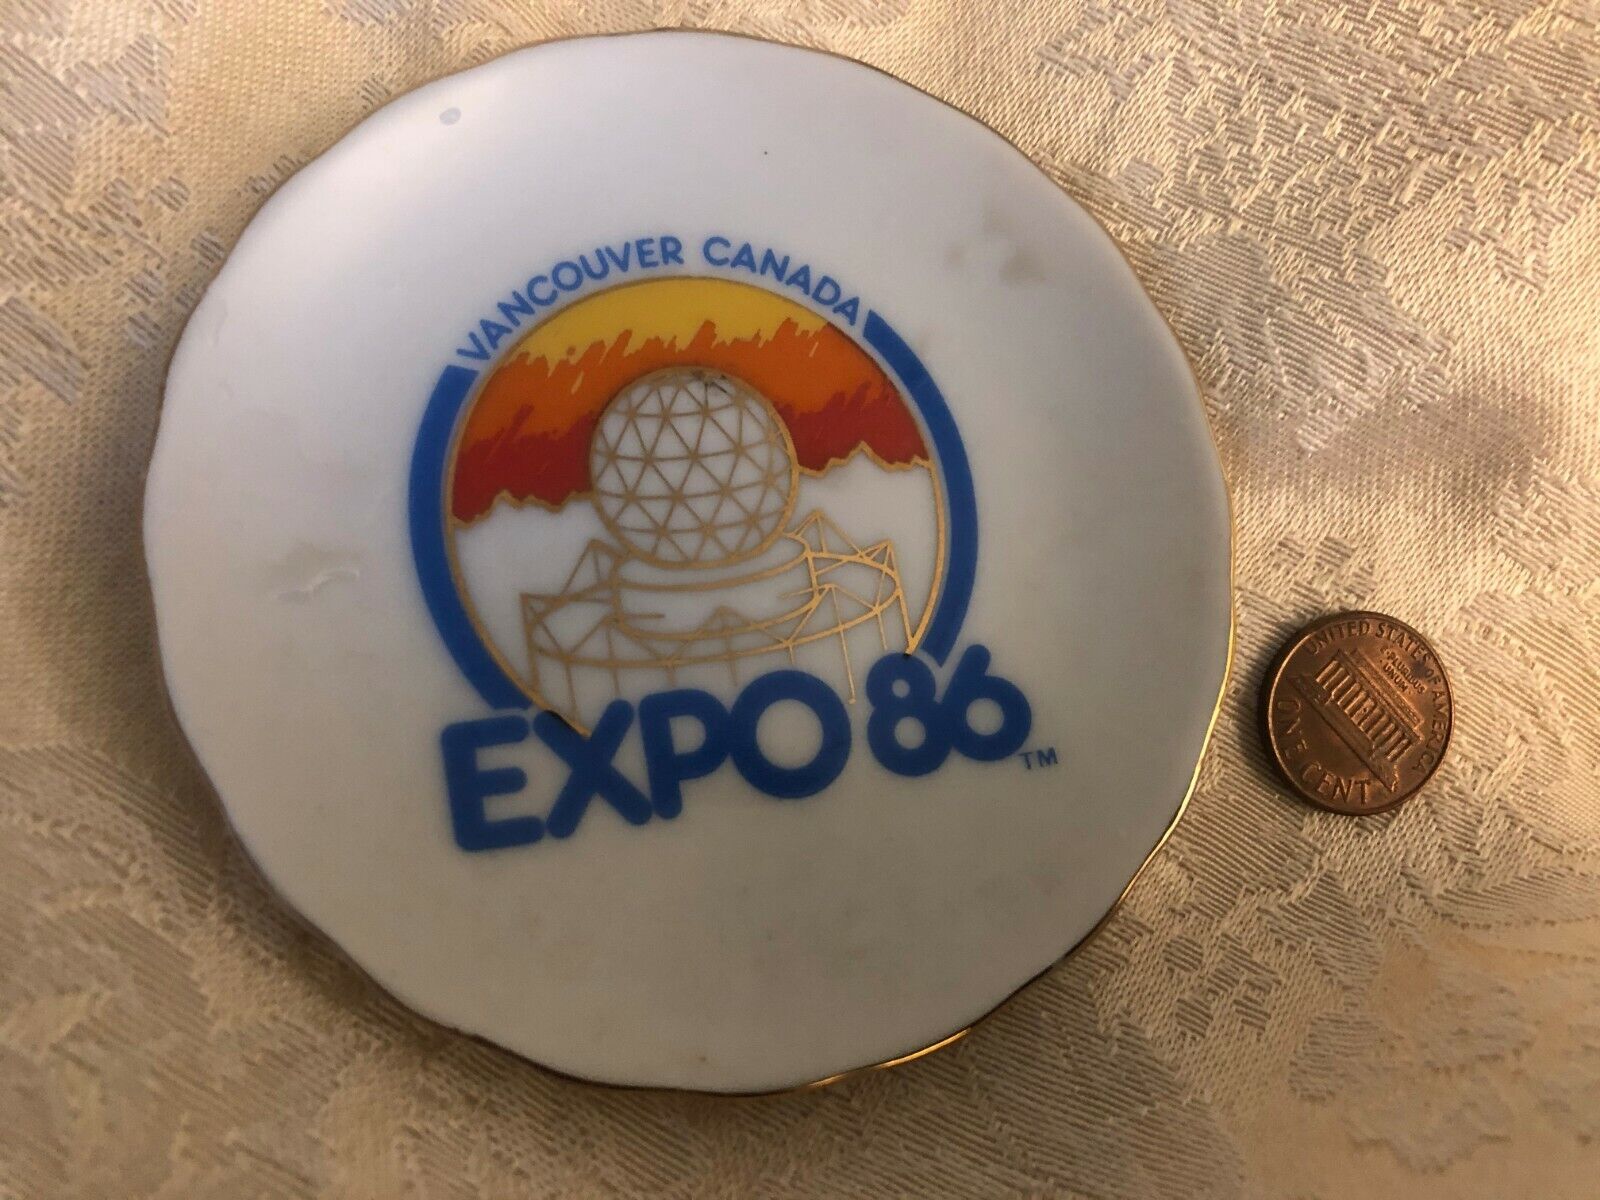 1986 WORLD EXPO 86 PLATE SOUVENIR VANCOUVER CANADA 3 1/1